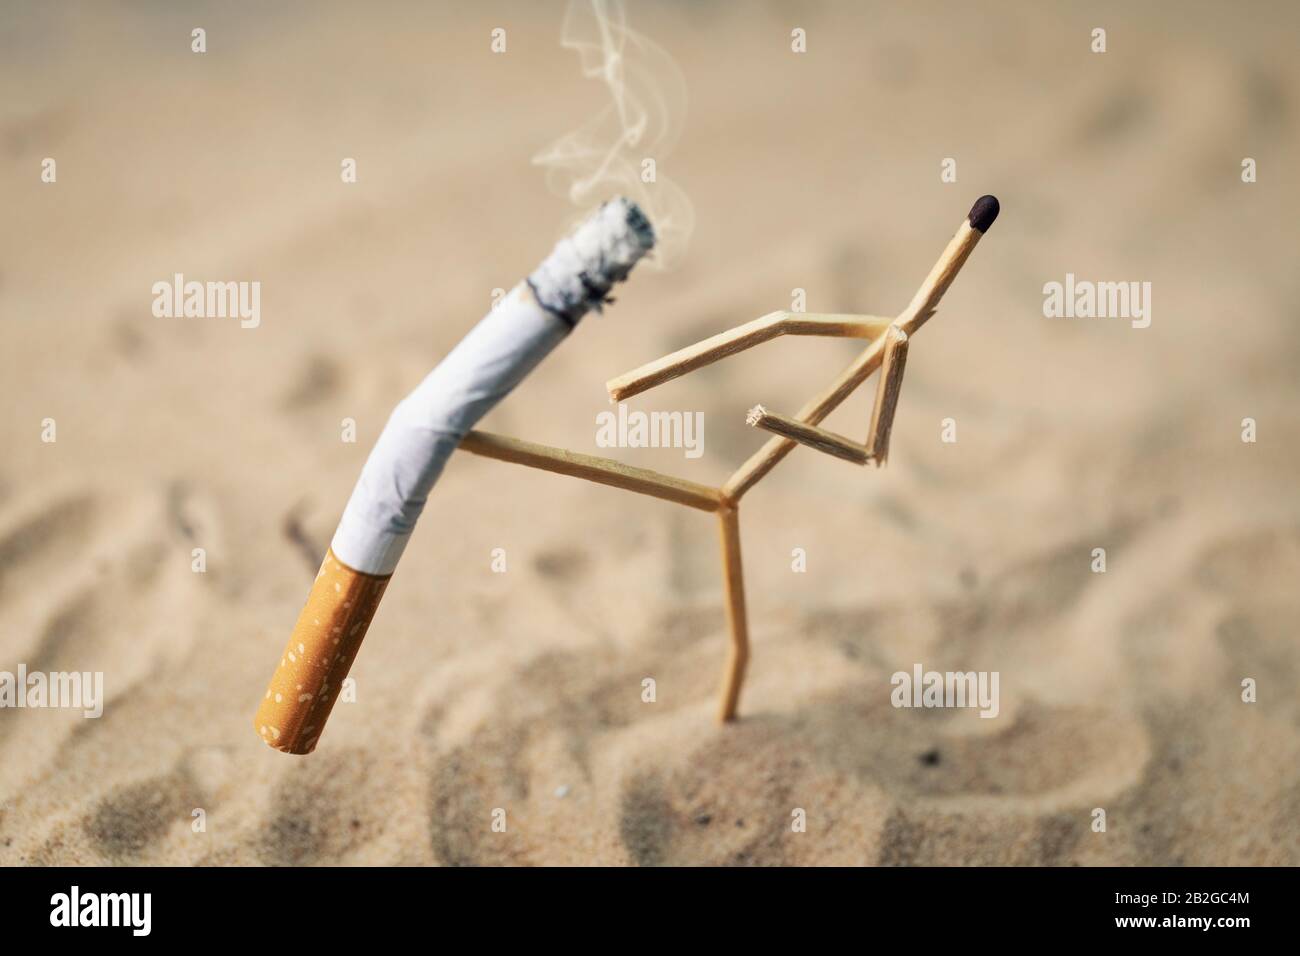 concept de cesser de fumer - match homme de lancer une cigarette brûlante Banque D'Images